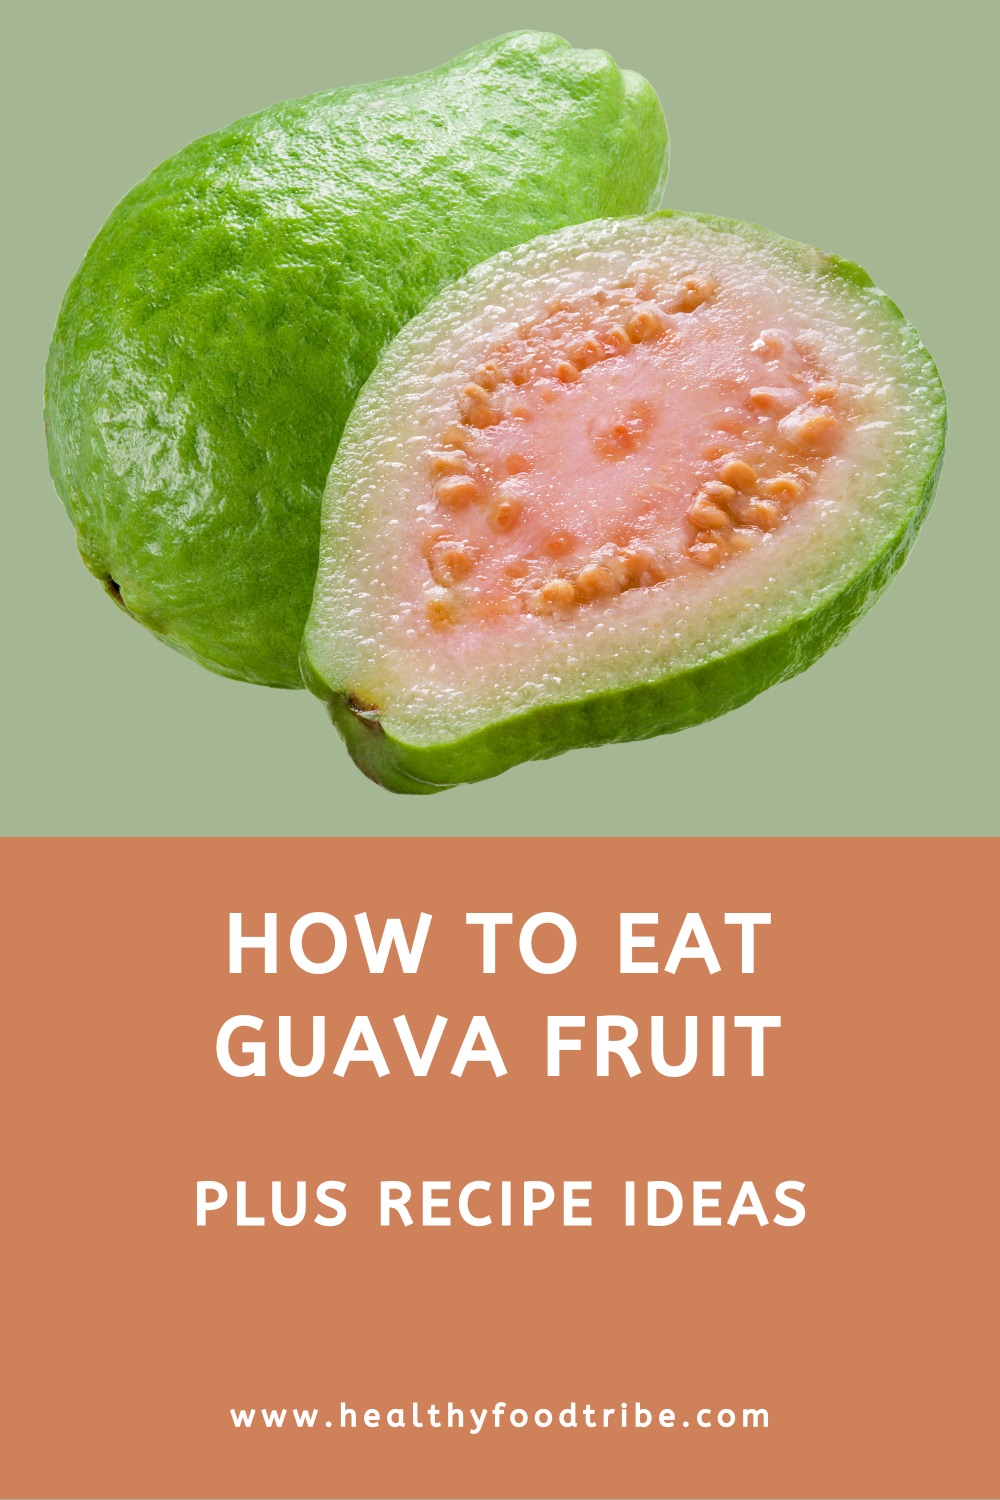 How to eat guava fruit (plus recipe ideas)